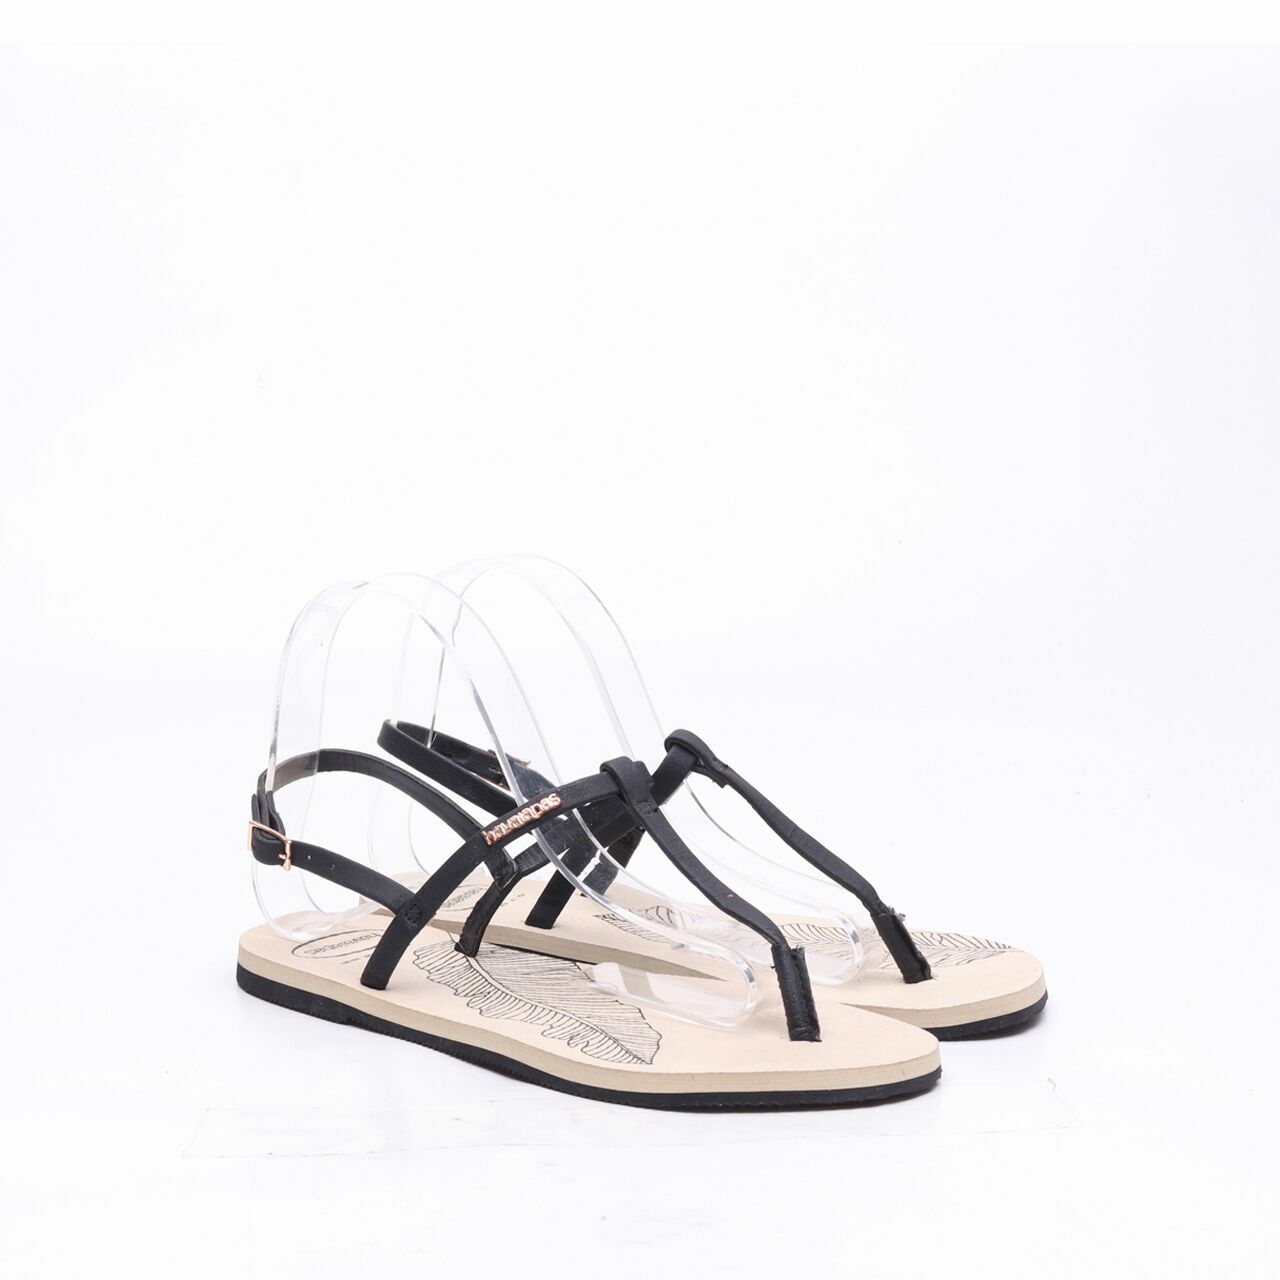 Havaianas Beige/Black Strap Sandals